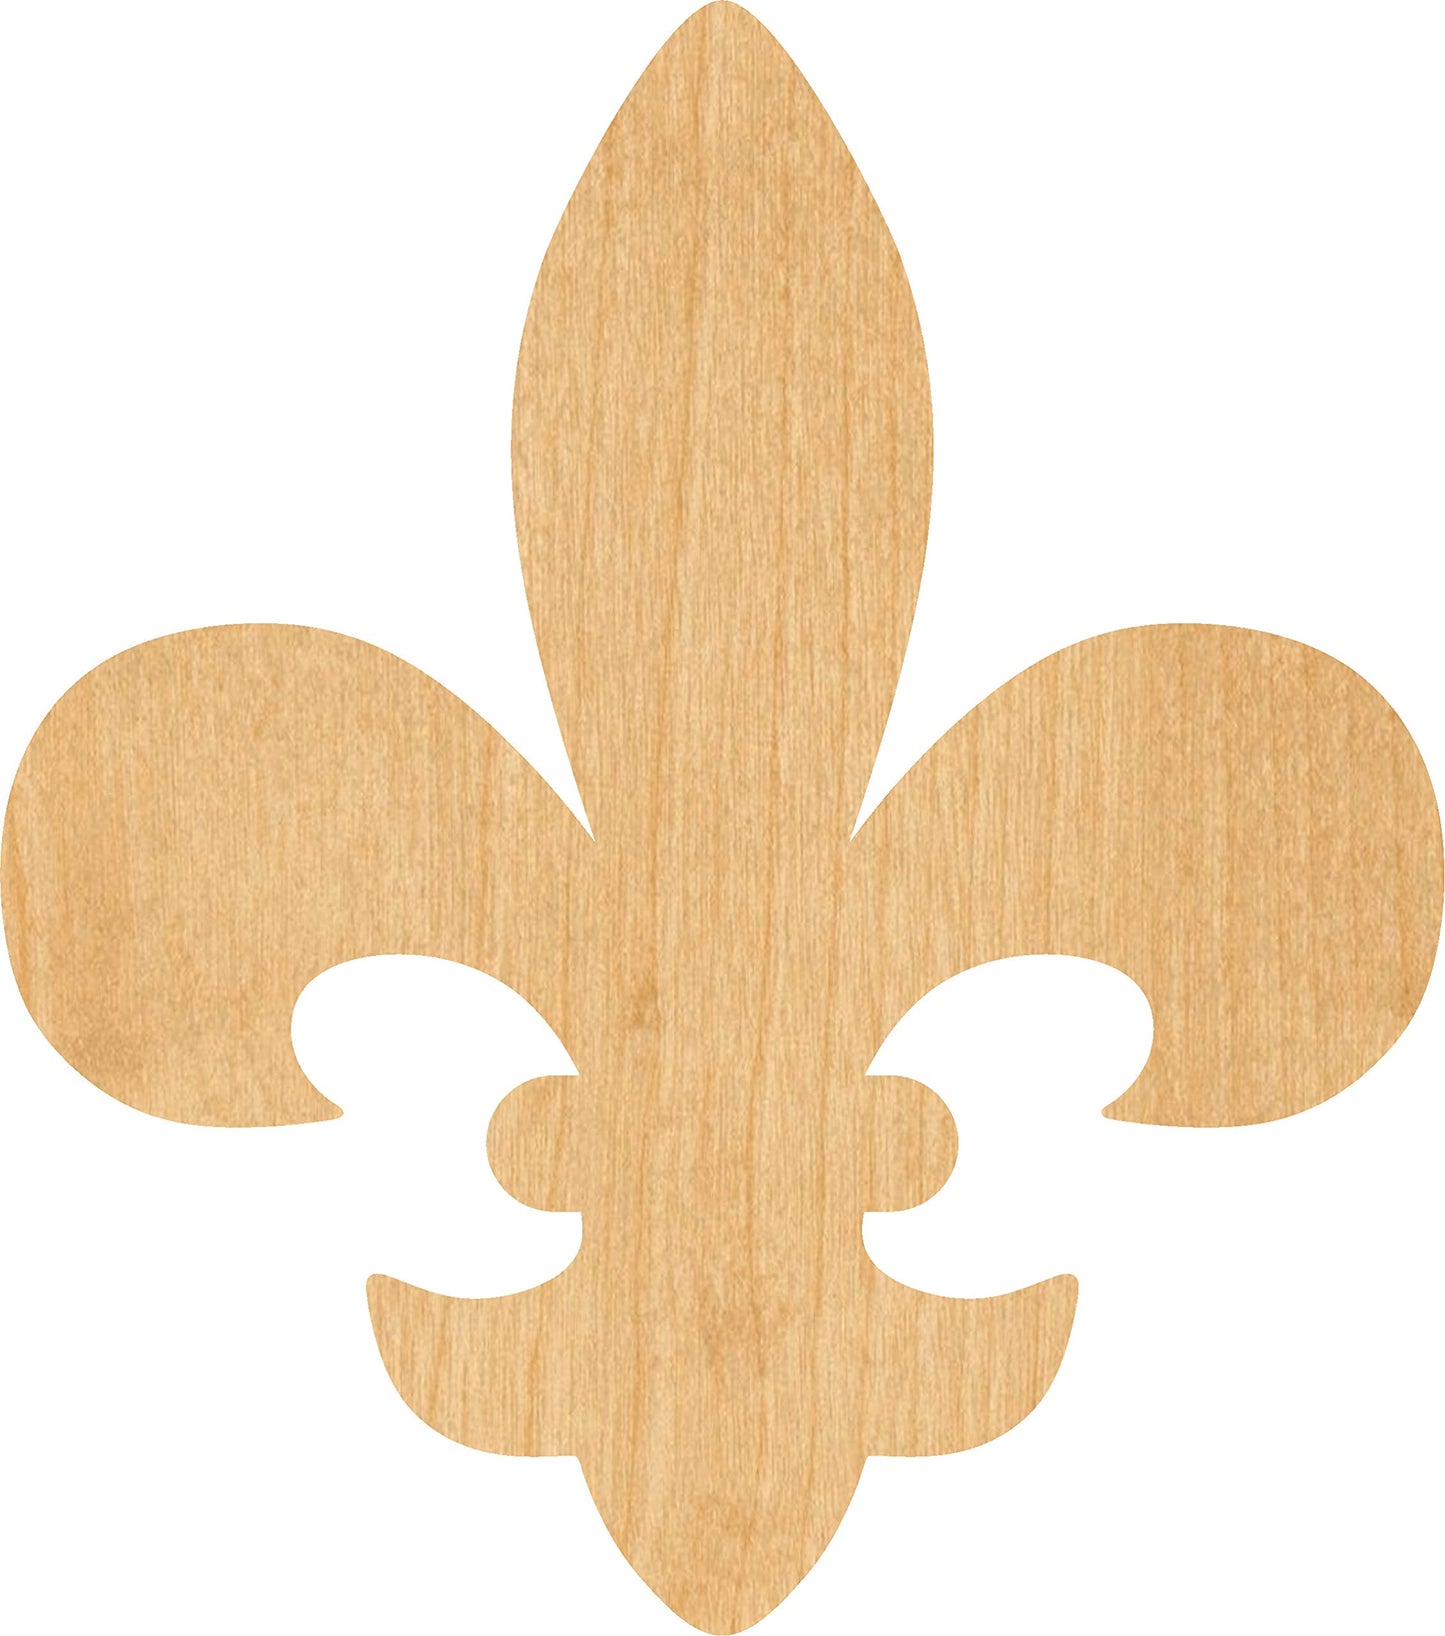 Fleur De Lis 3 Laser Cut Out Wood Shape Craft Supply - 4 Inch